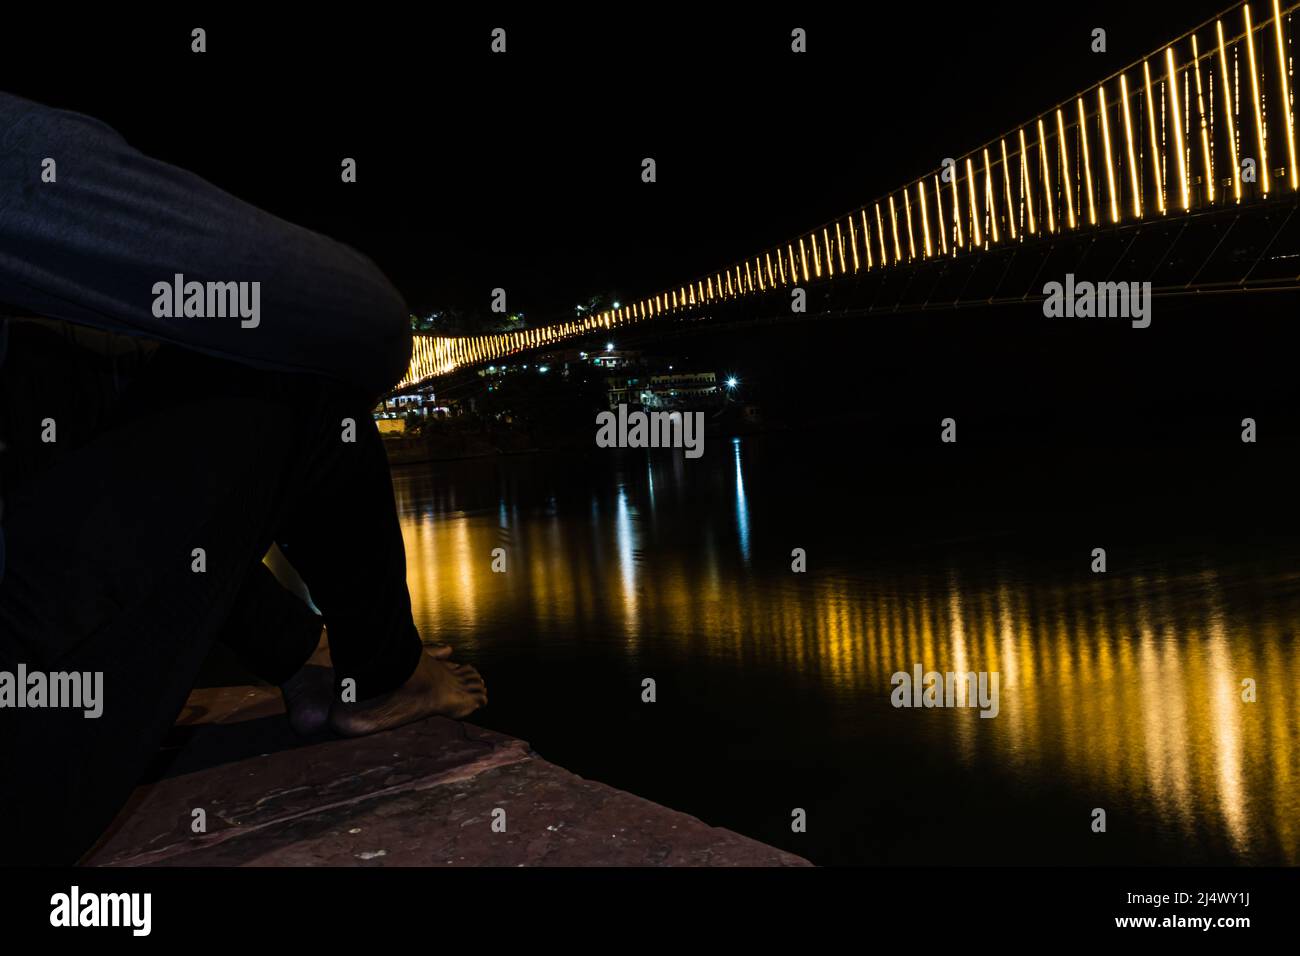 Mann beobachten Eisen Hängebrücke mit Fähre Lichter mit Wasser Reflexion Bild beleuchtet wird in rishikesh uttrakhand indien aufgenommen. Stockfoto